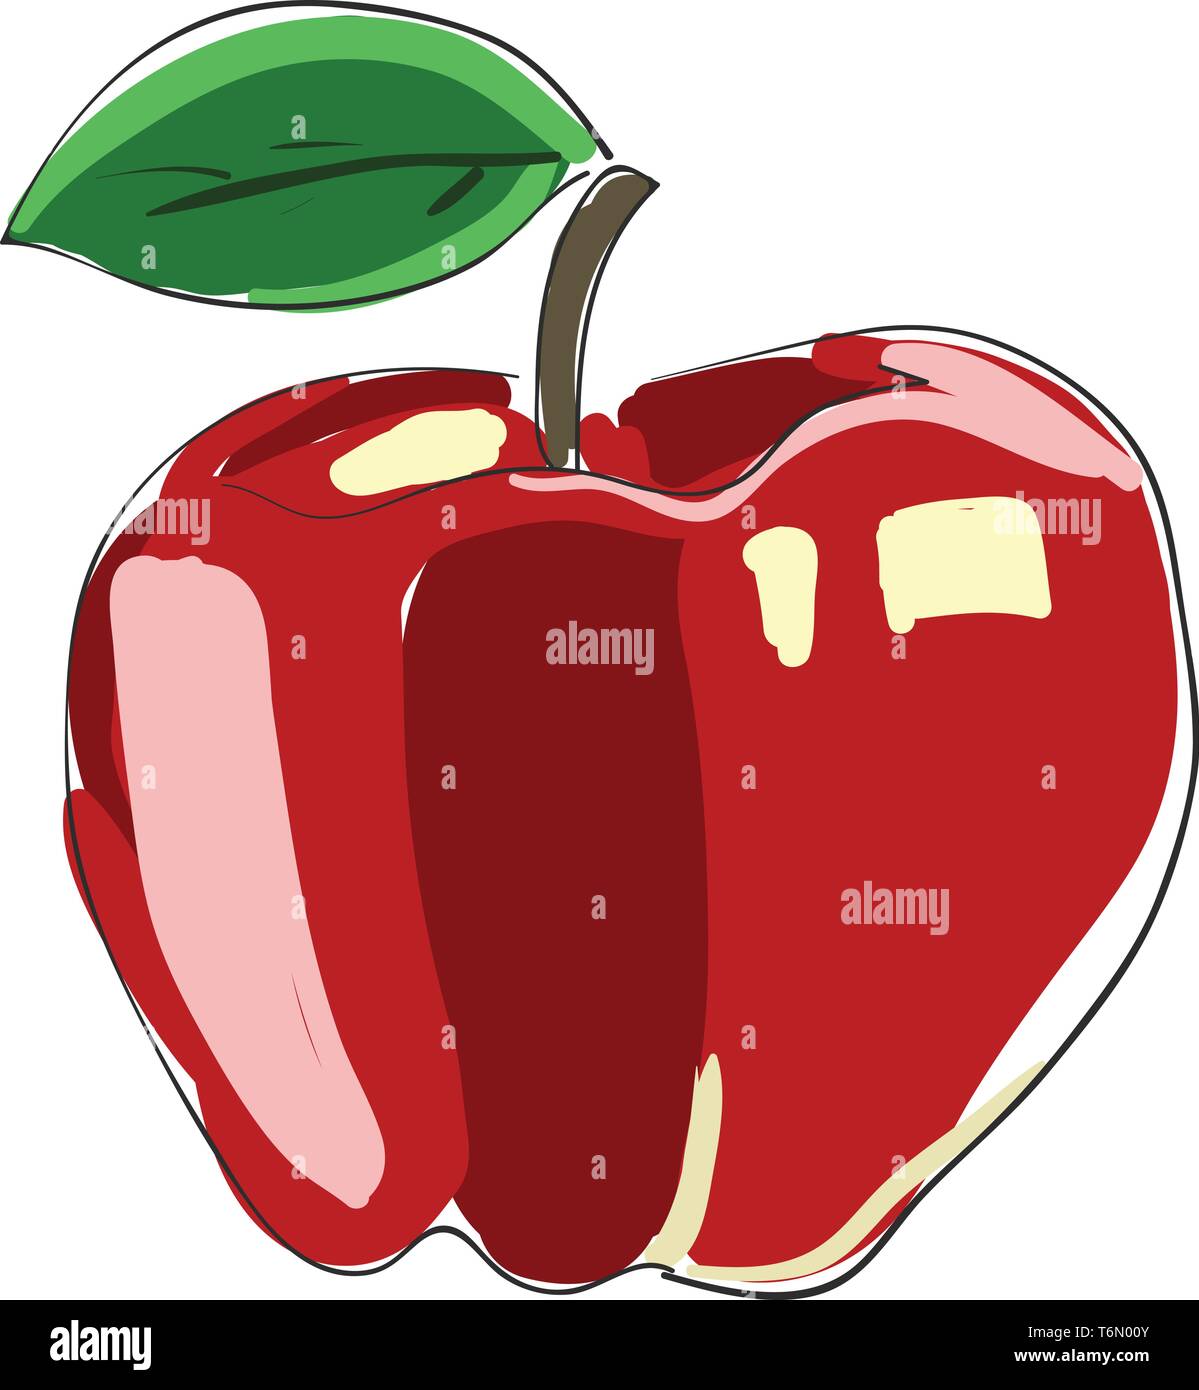 La verniciatura di una mela rossa con una singola foglia verde in un vettore astratto colore di disegno o illustrazione Illustrazione Vettoriale